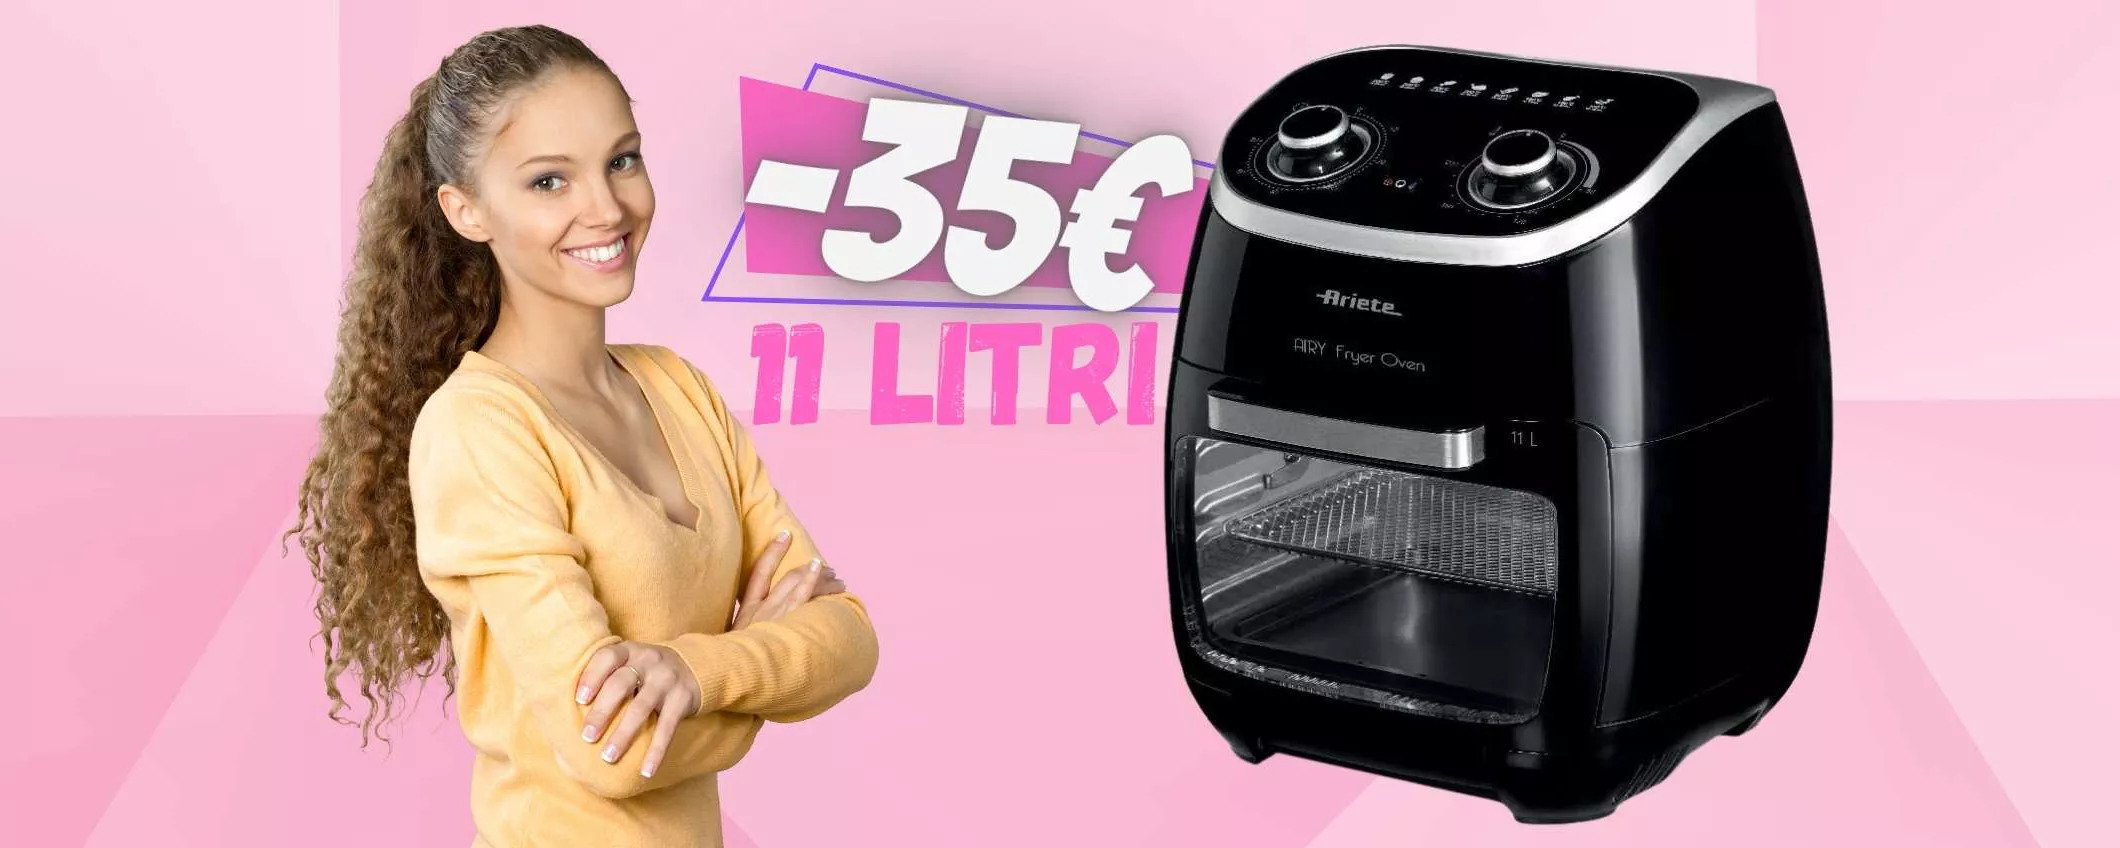 Ariete Ayer Fryer Oven: friggitrice ad aria da 11 Litri a 35€ in MENO